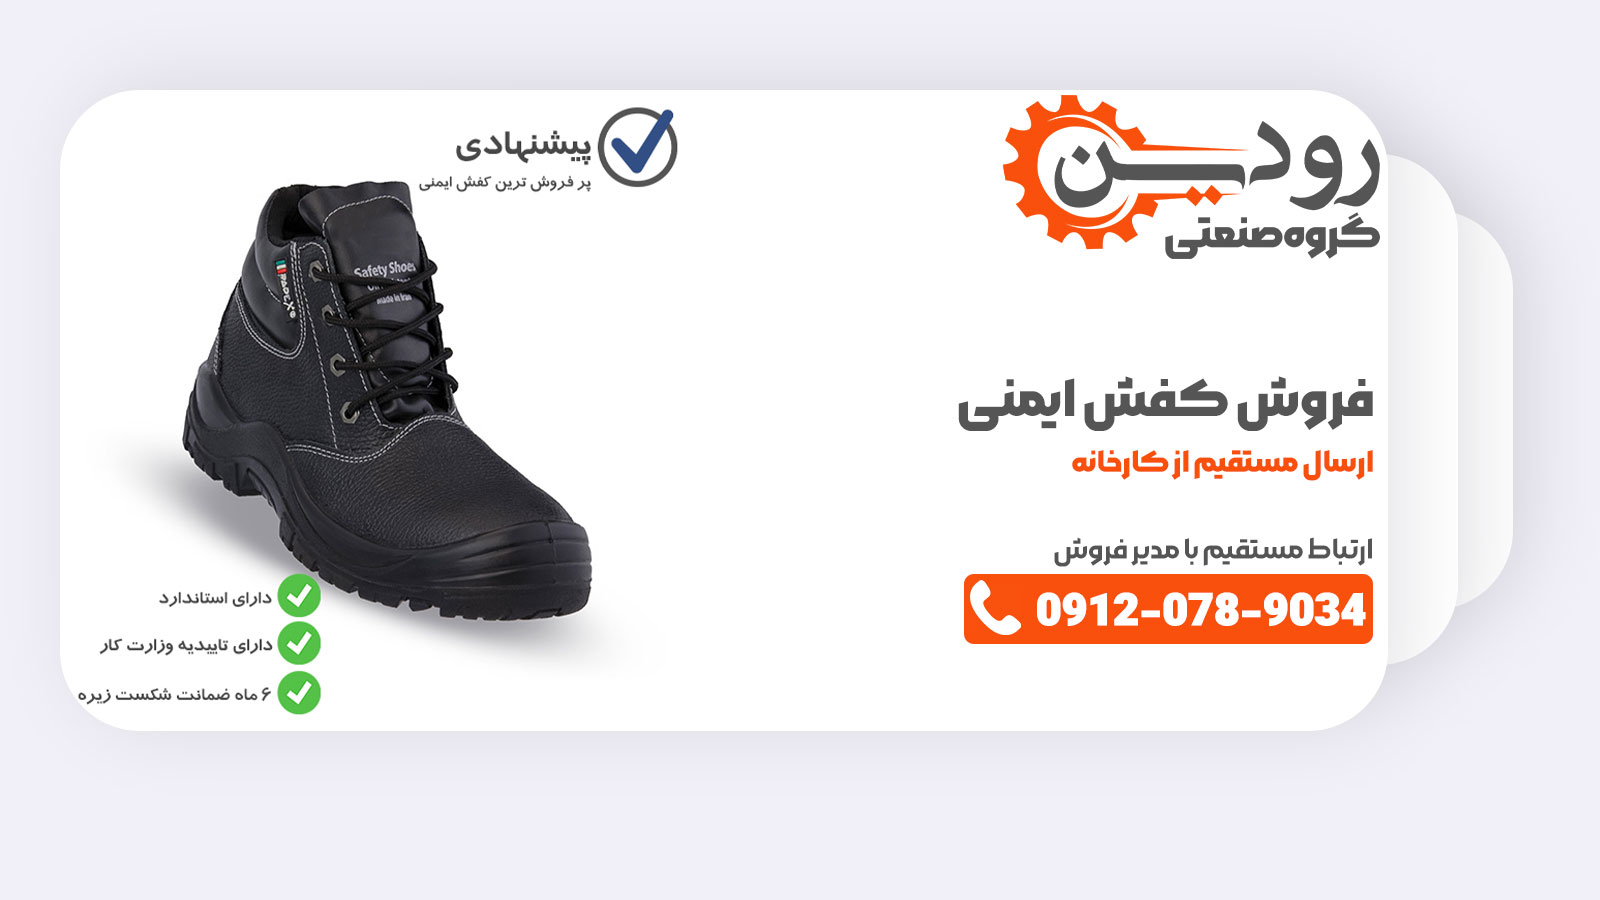 خرید و فروش کفش ایمنی در کارخانه تولید کفش ایمنی در قشم بسیار انجام می شود و بازار داغی دارد.